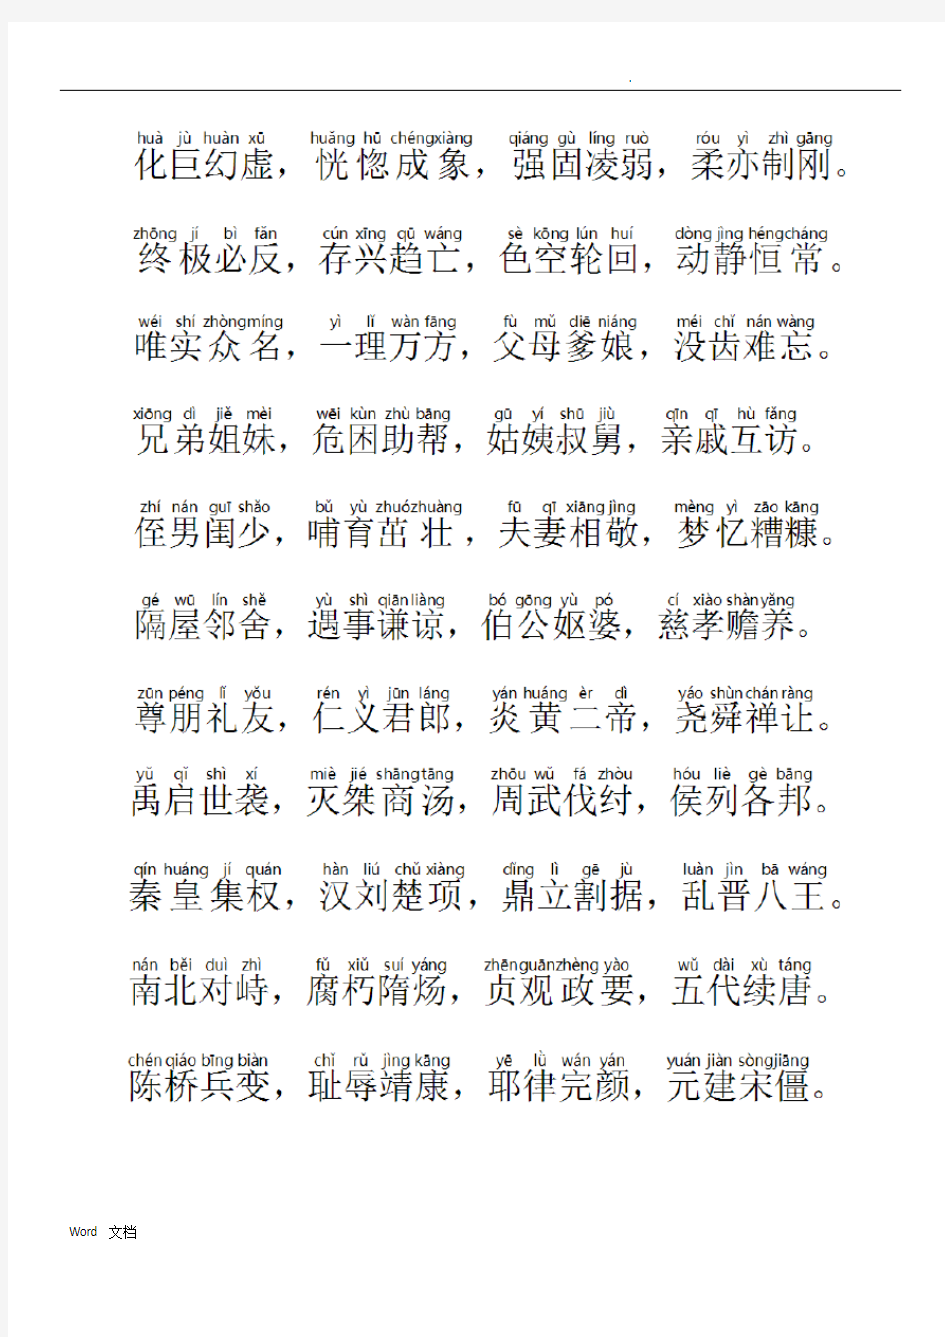 中华字经带拼音直接打印